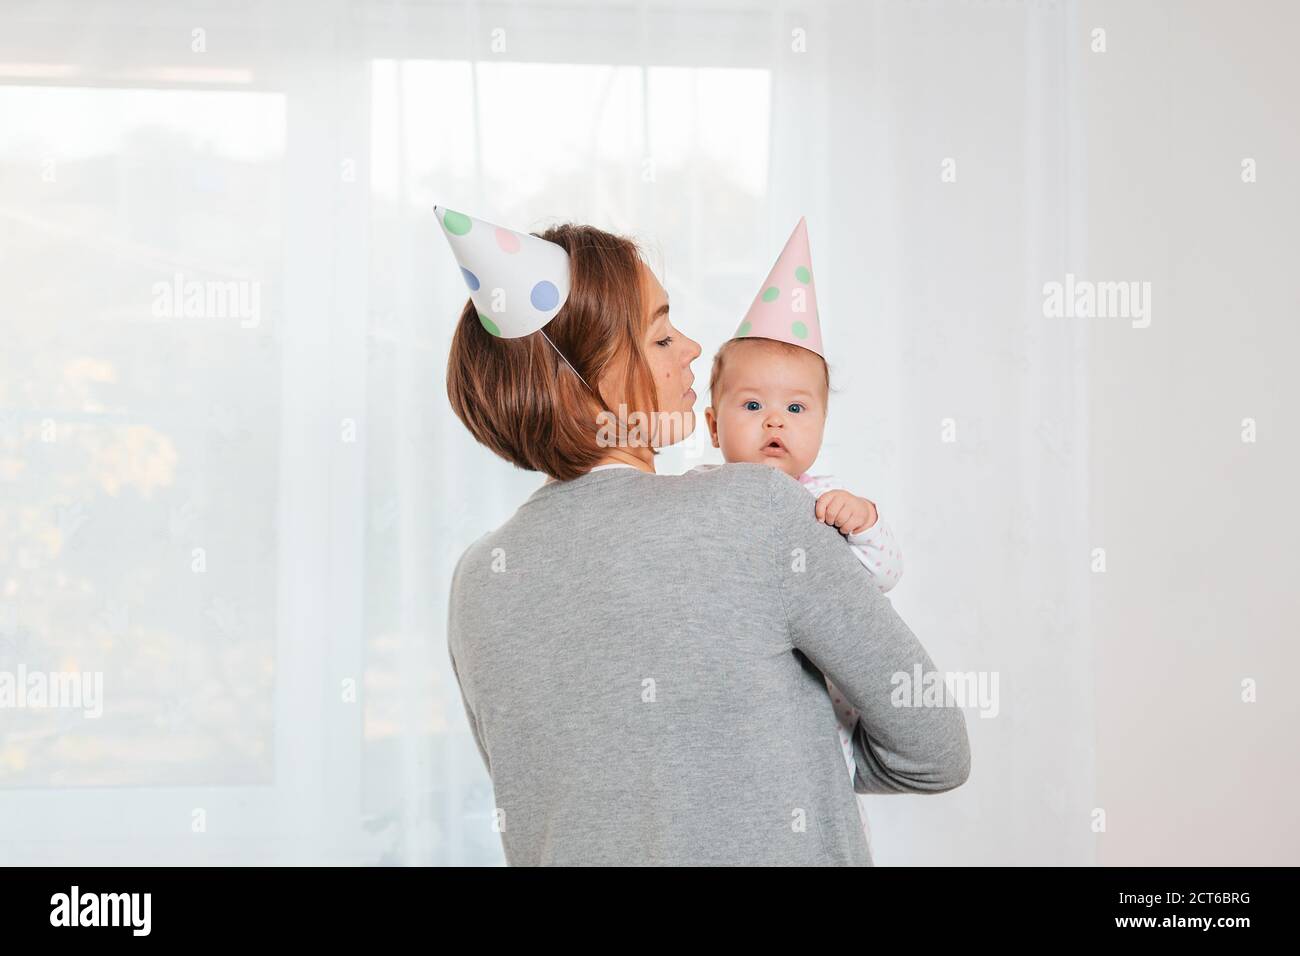 Une jeune mère tient un bébé mignon dans ses bras. Chapeaux en papier festif sur la tête. Vue arrière. Sur l'arrière-plan. Concept de maternité et heureux Banque D'Images